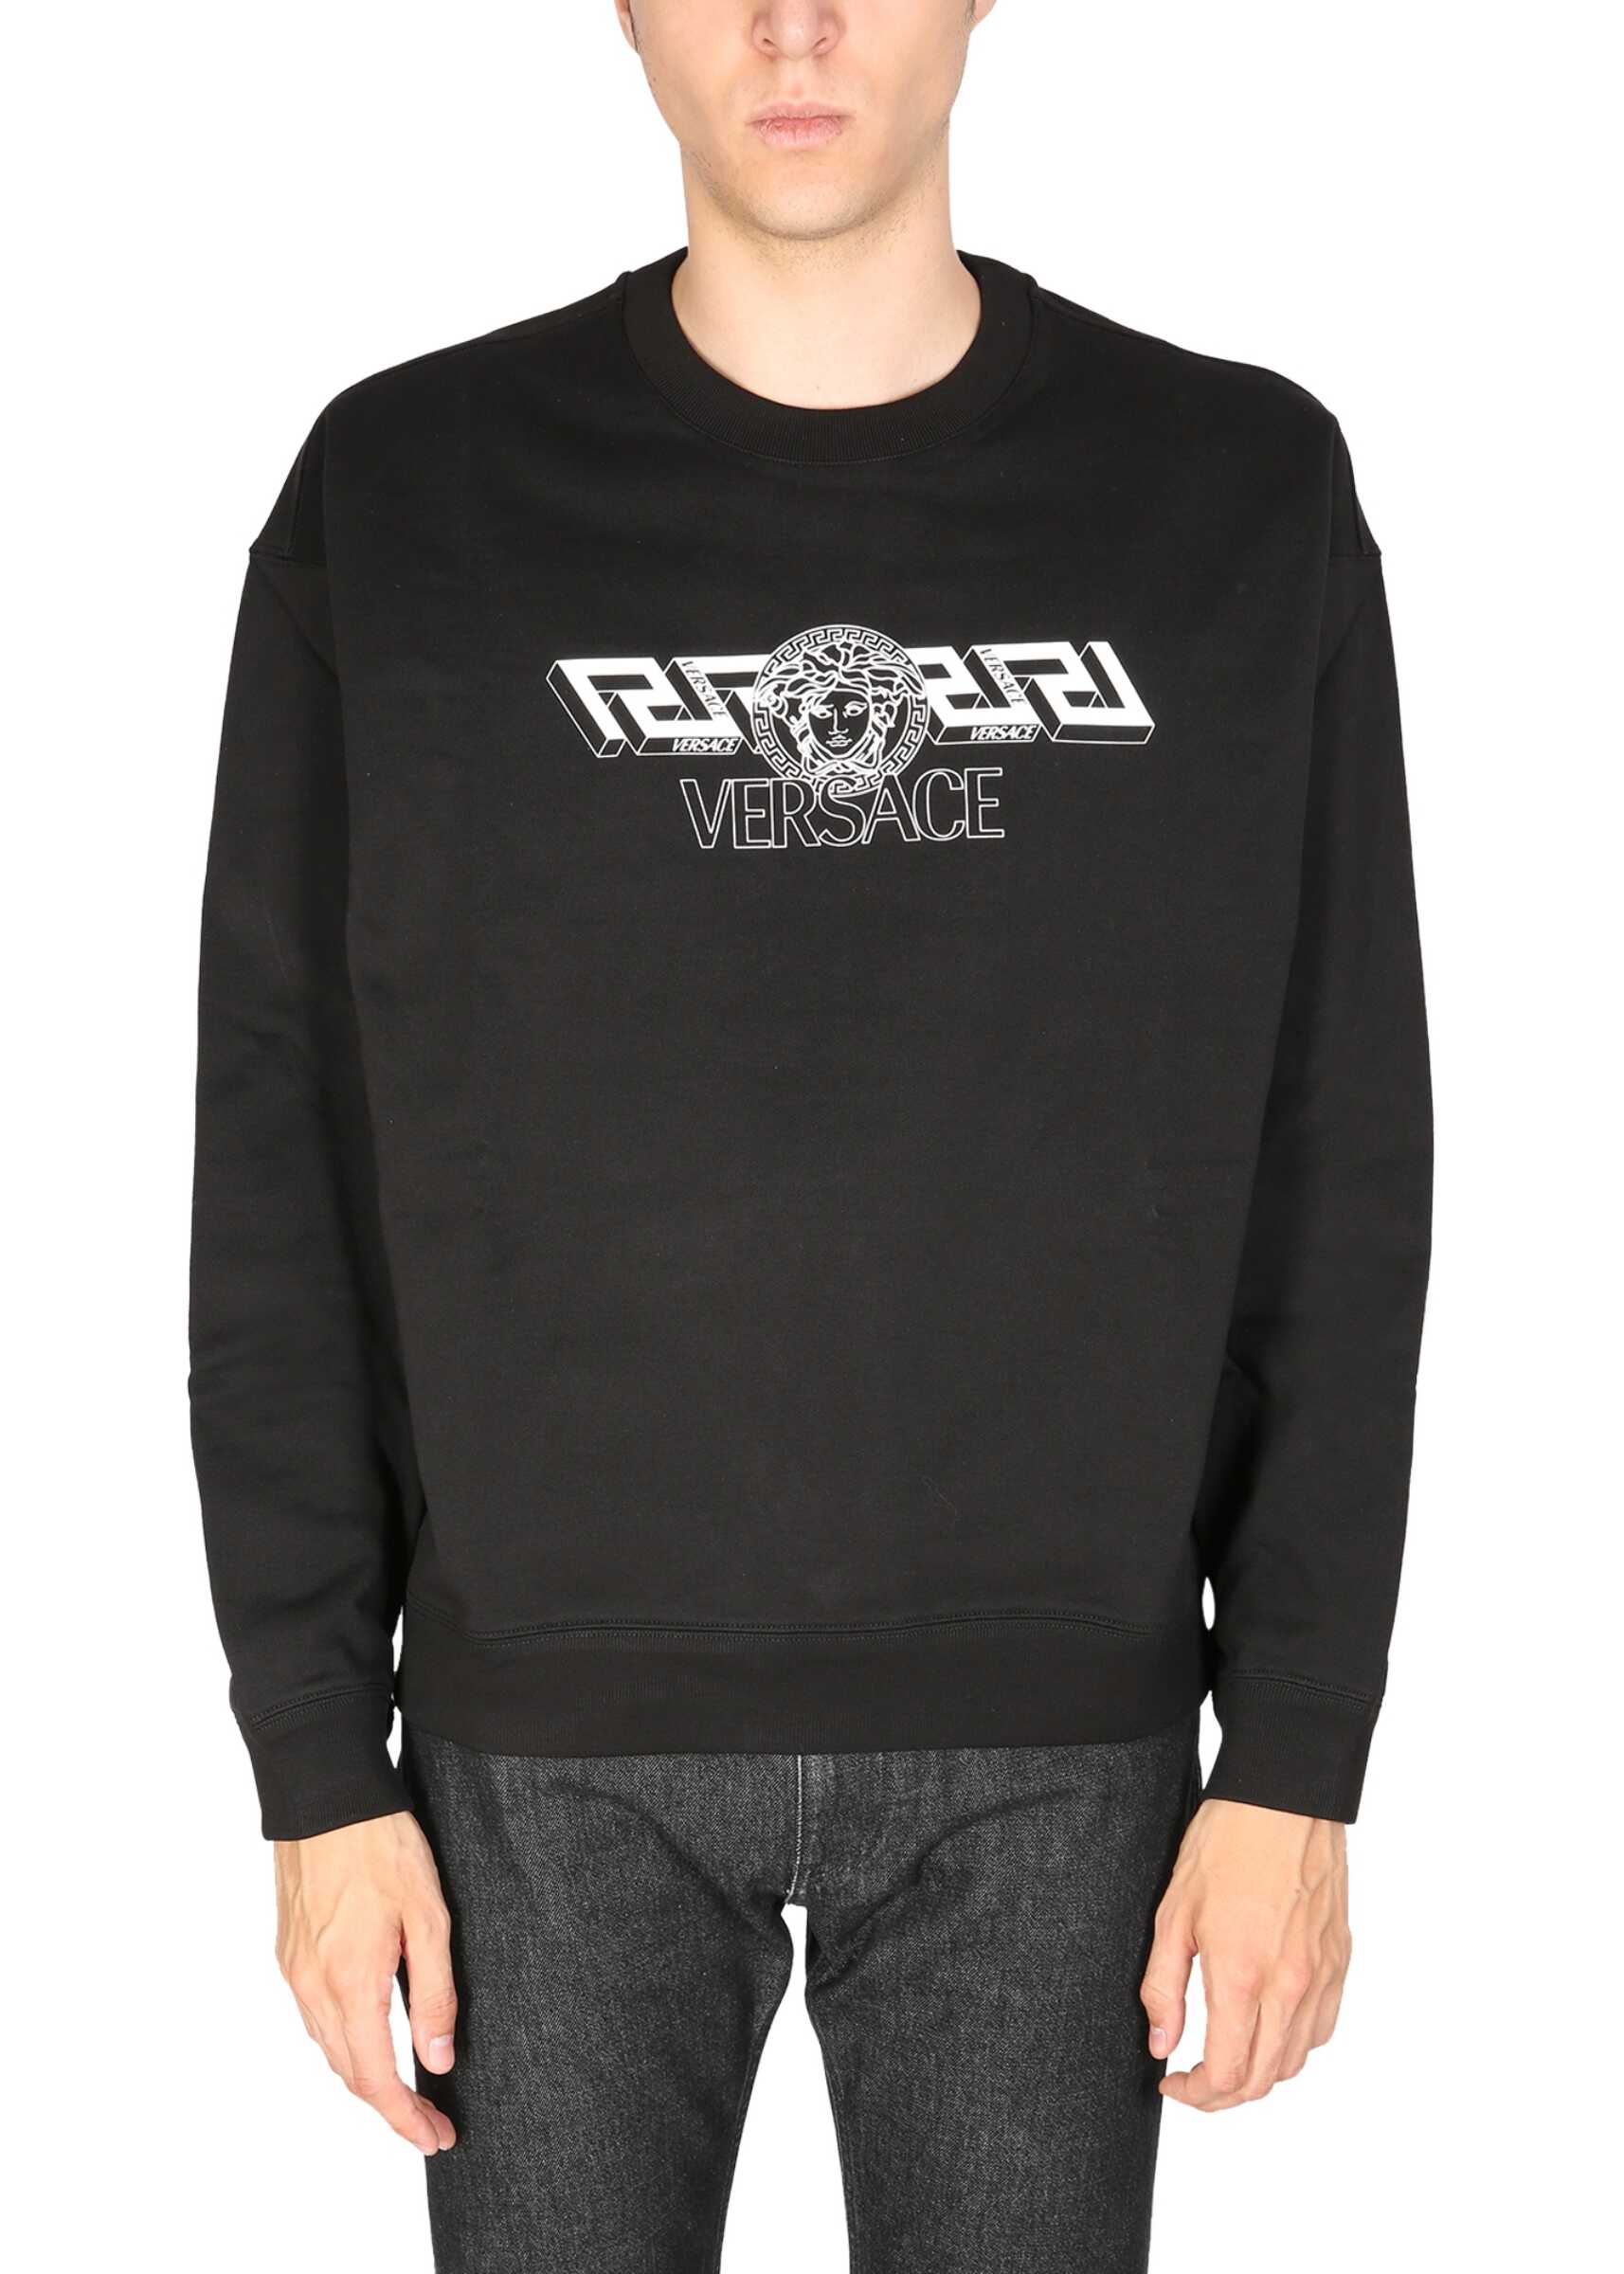 Versace The Greek Sweatshirt BLACK